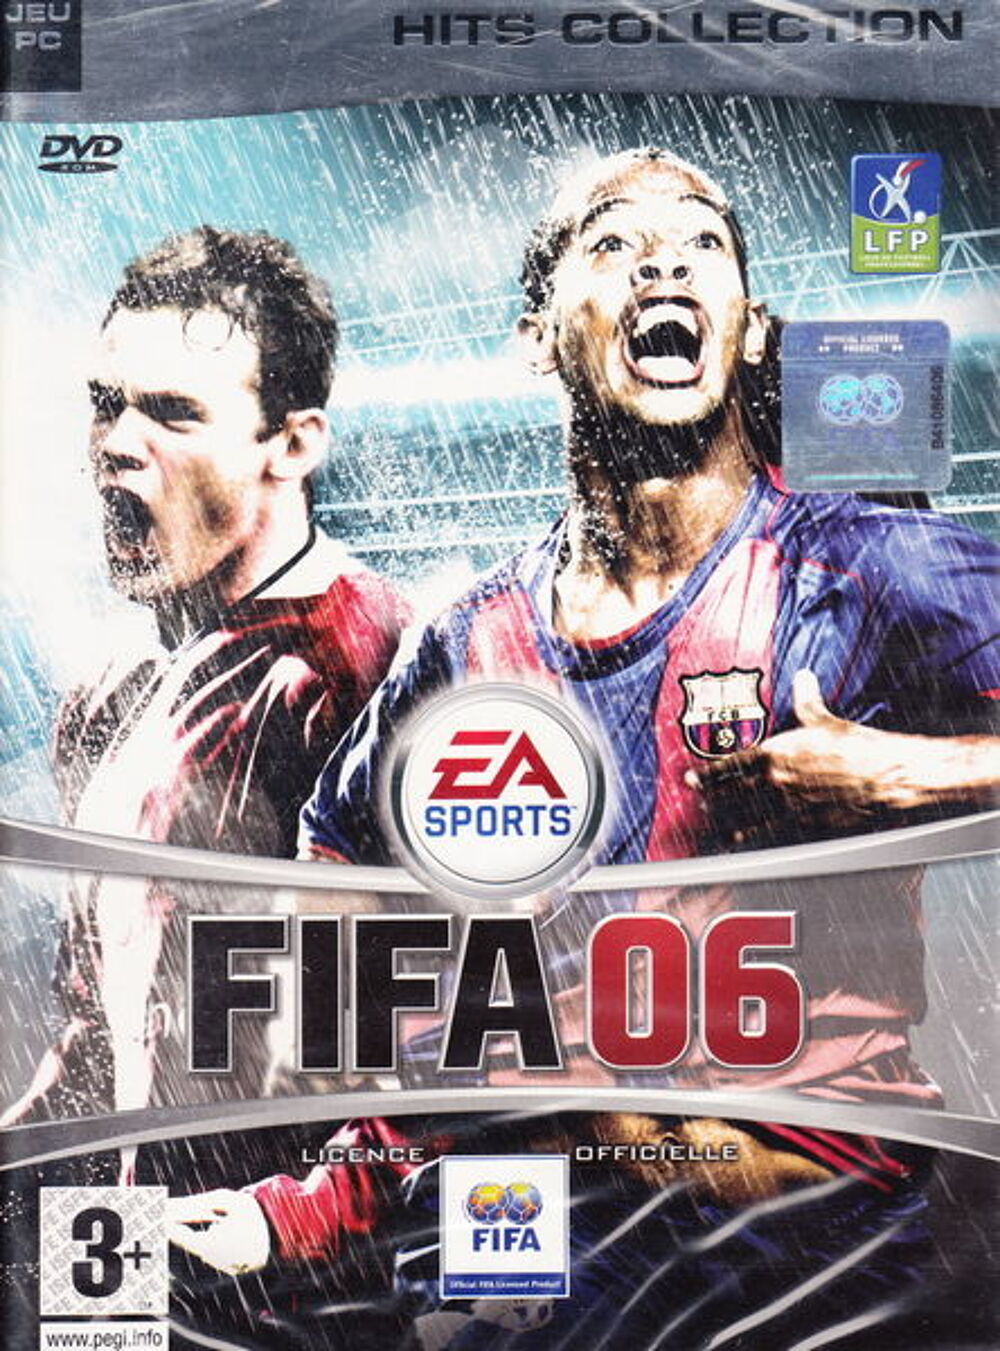 DVD jeu PC FIFA 06 NEUF blister
Consoles et jeux vidos